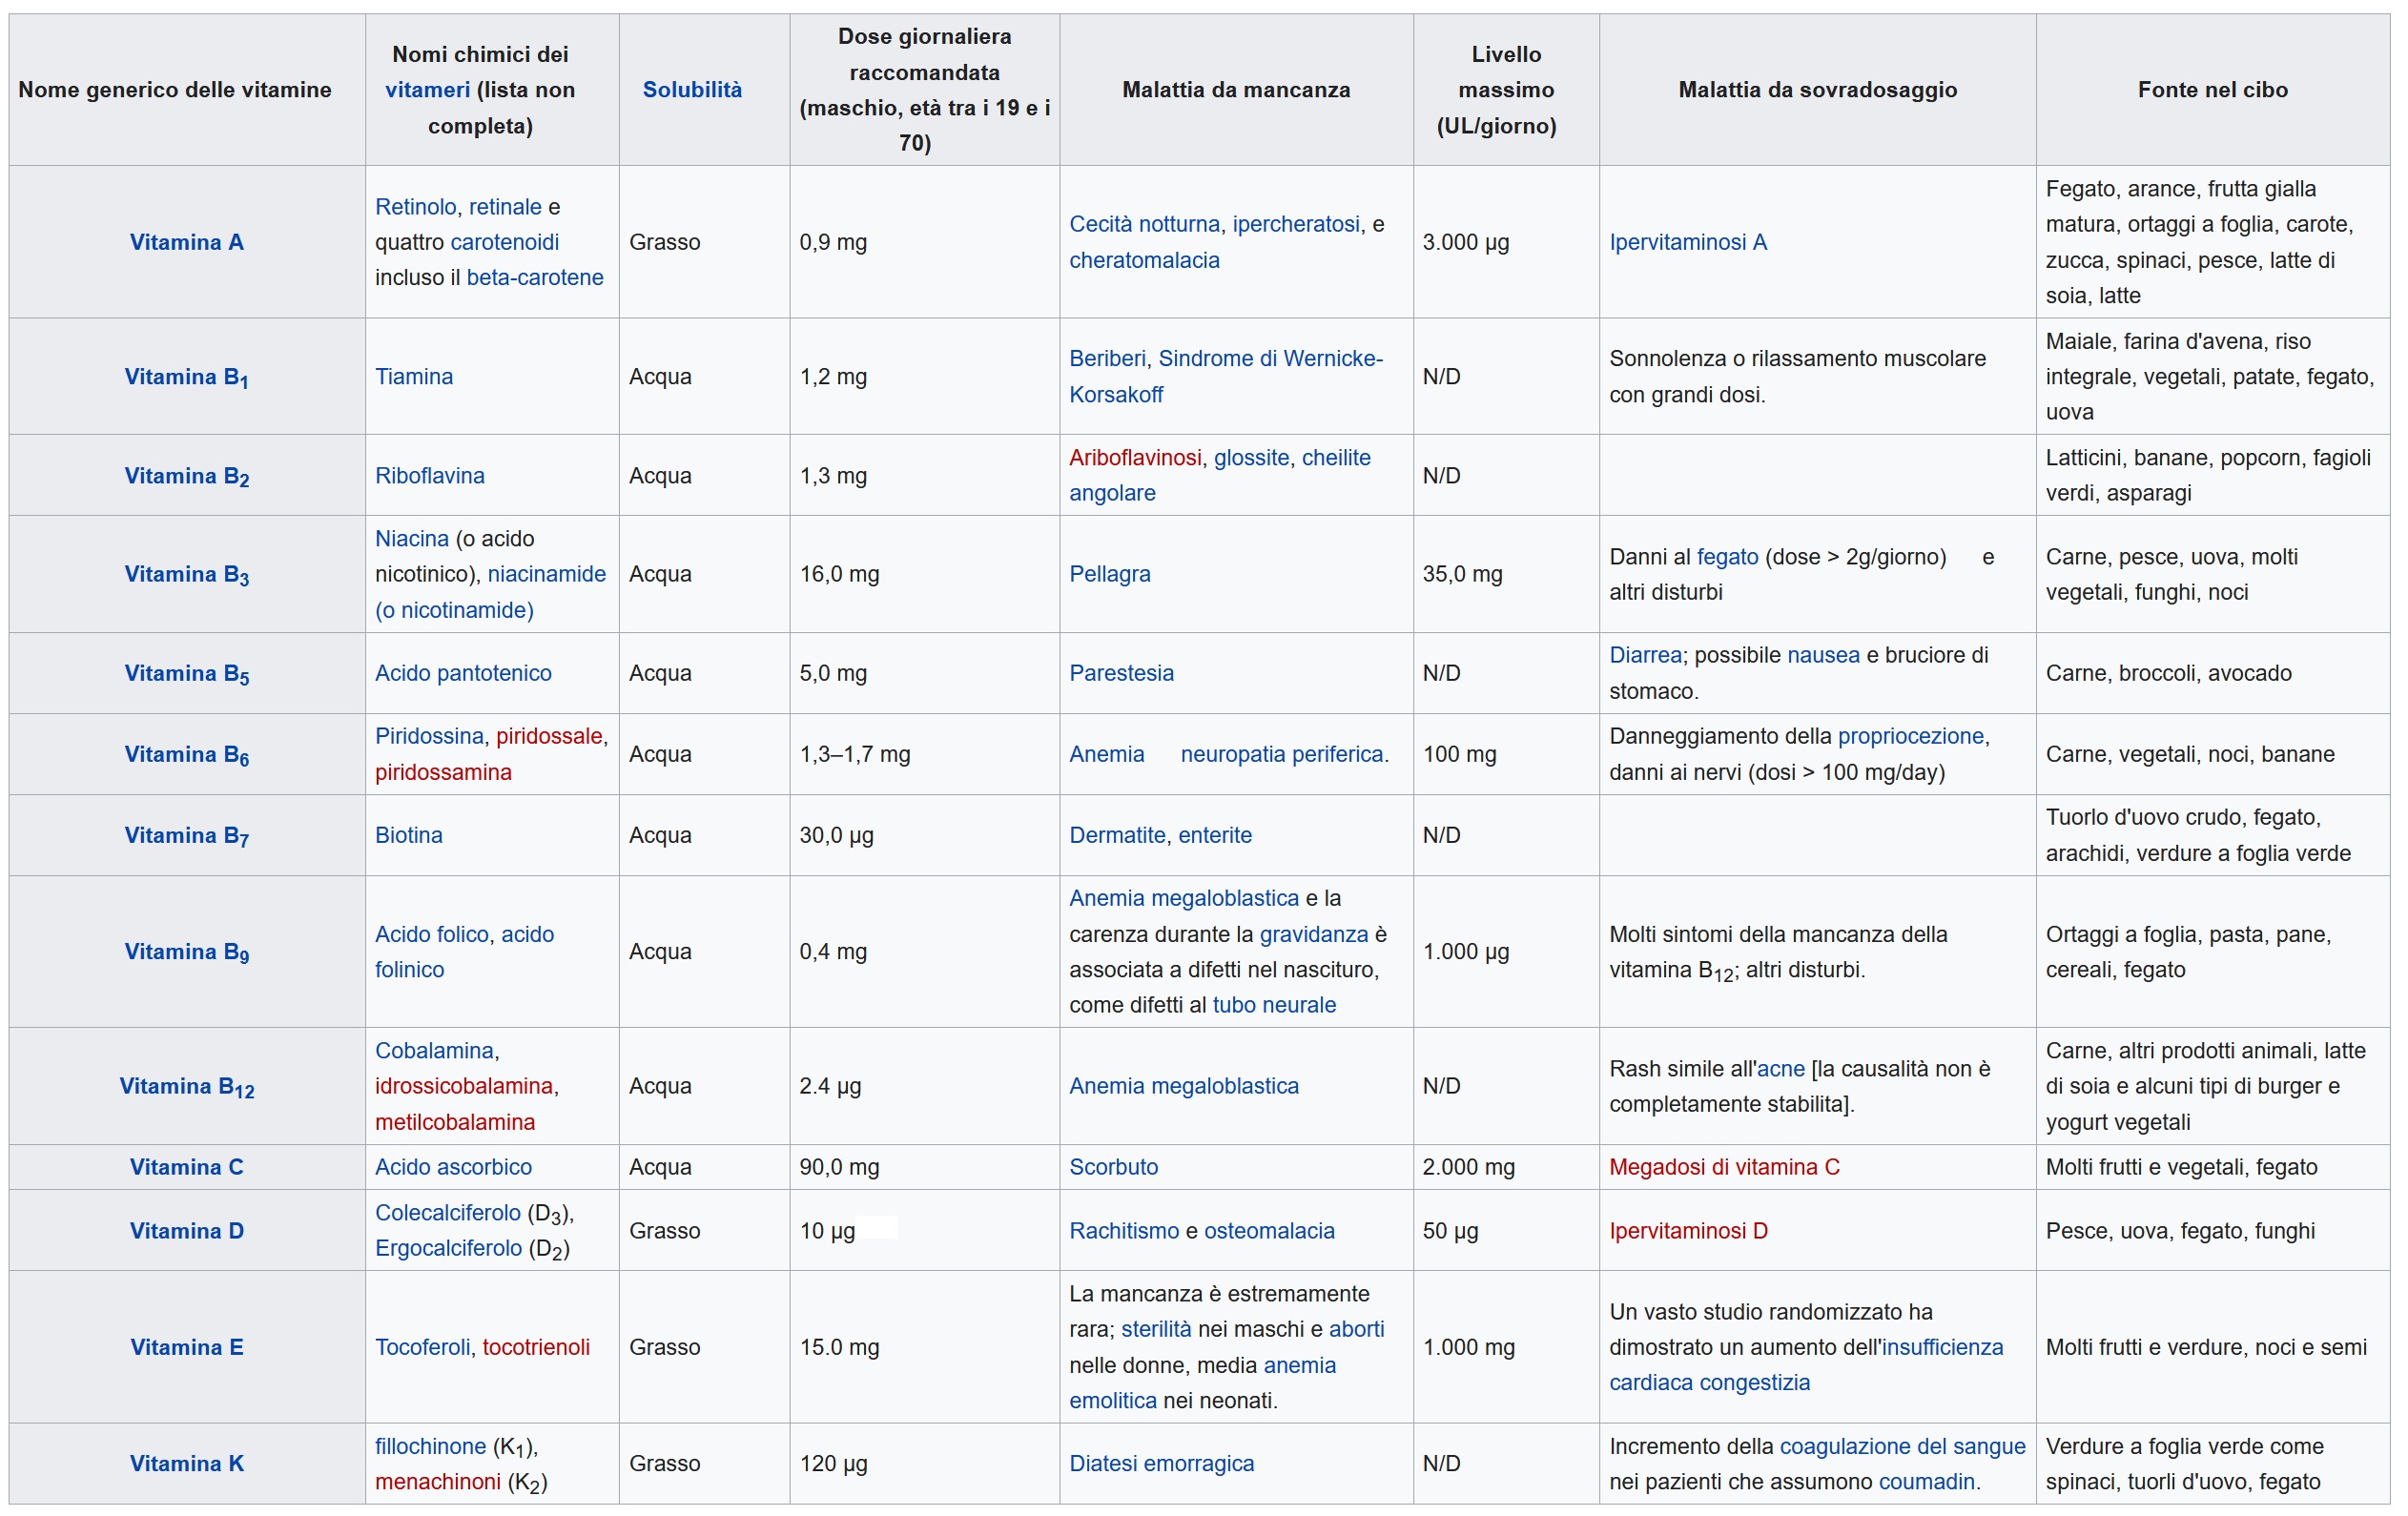 tabella vitamine (mod. da wikipedia)